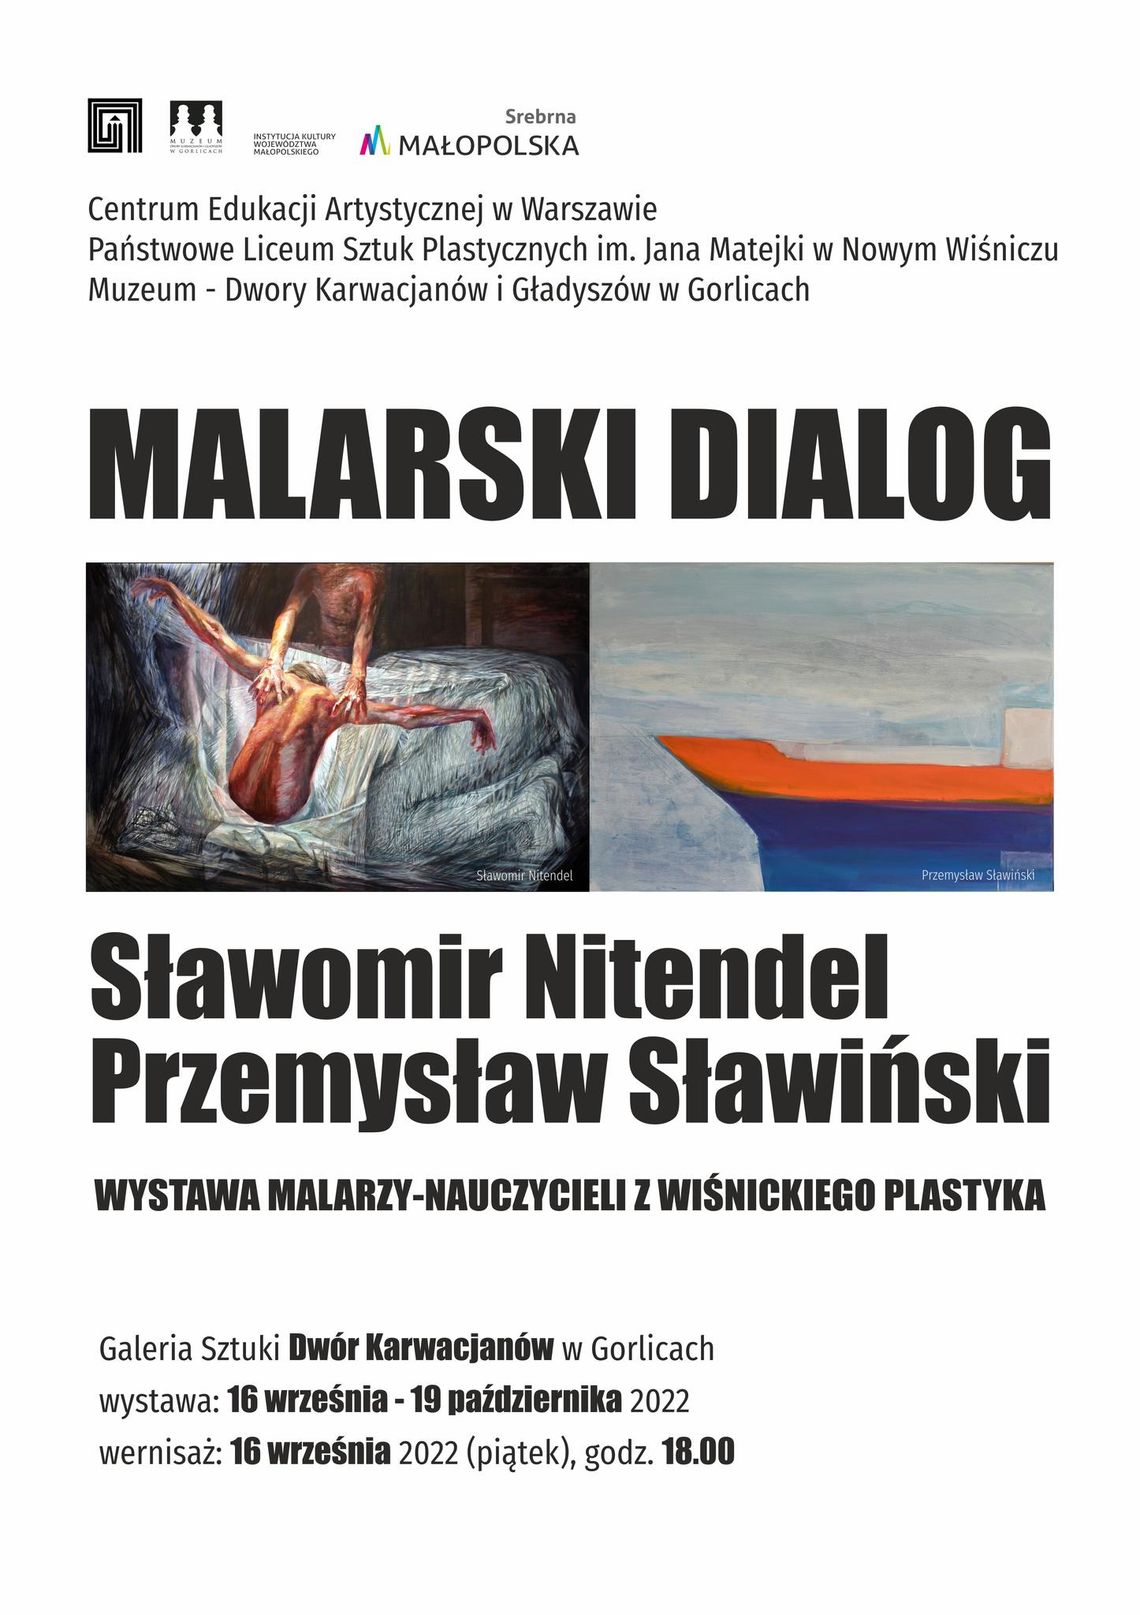 Wernisaż wystawy „Malarski dialog” Sławomir Nitendel i Przemysław Sławiński | zapowiedzi imprez - halogorlice.info